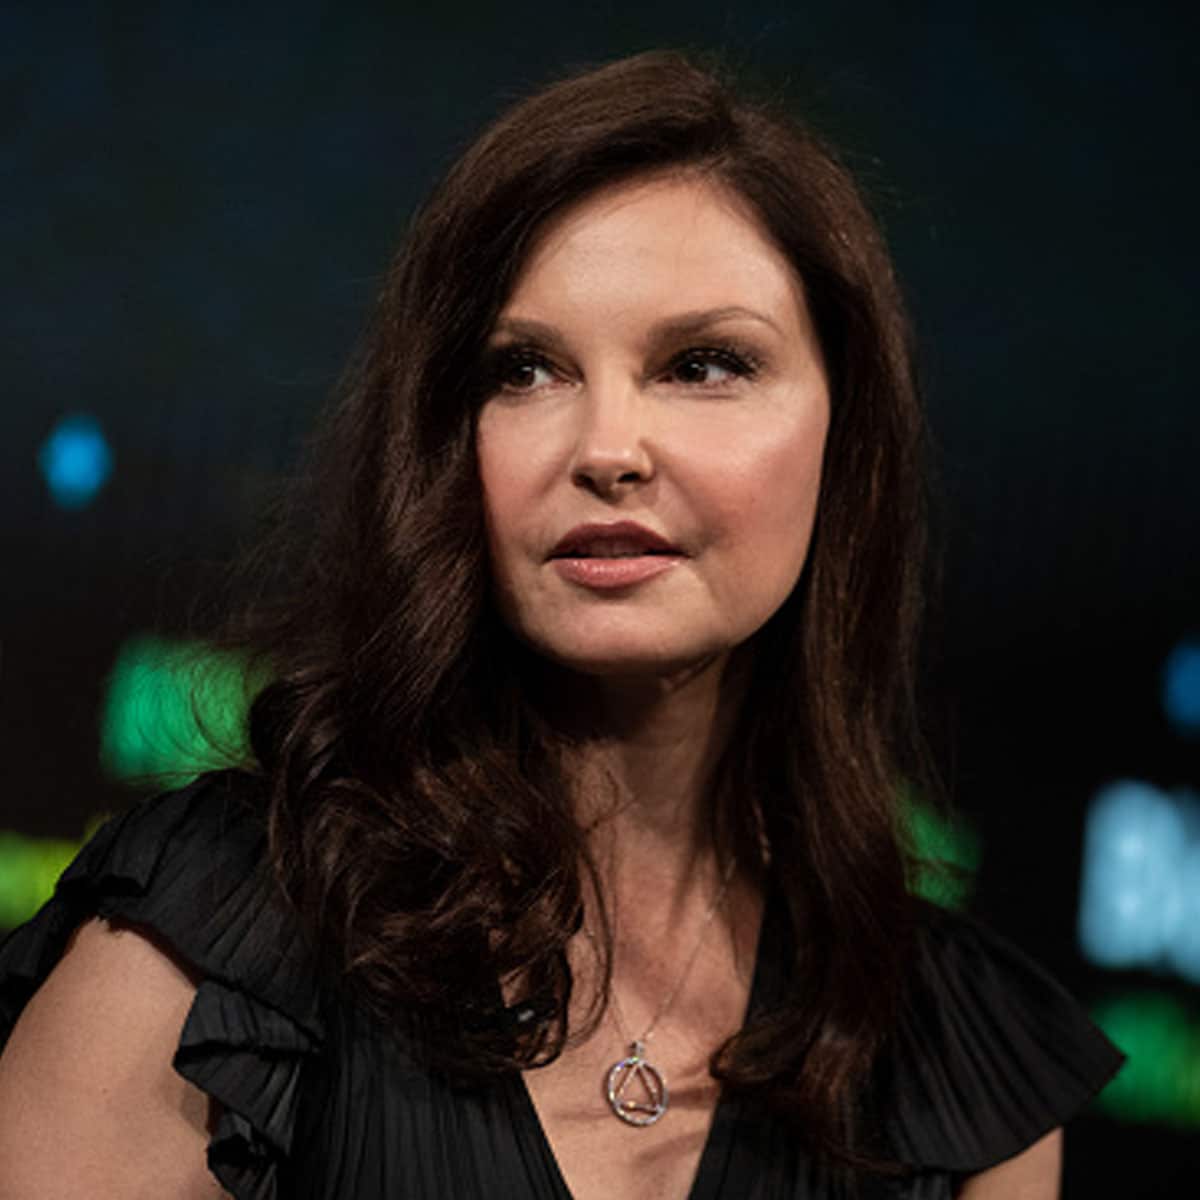 Ashley Judd Net Worth, Age, Bio, Husband, and Twitter